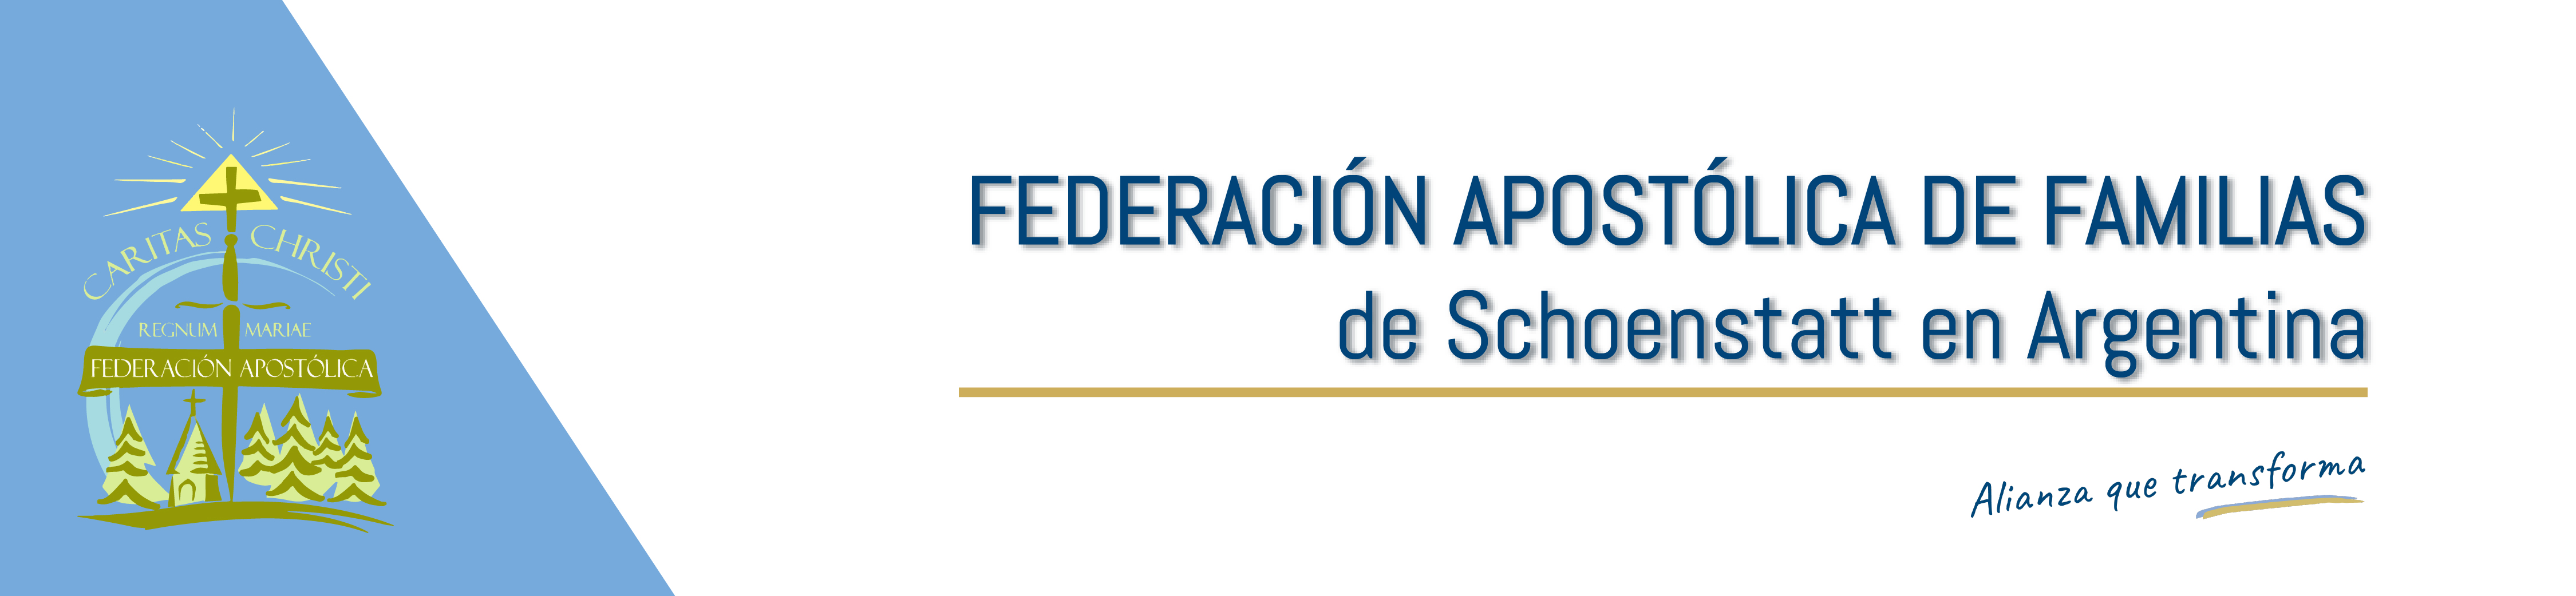 Federación de Familias de Schoenstatt Argentina